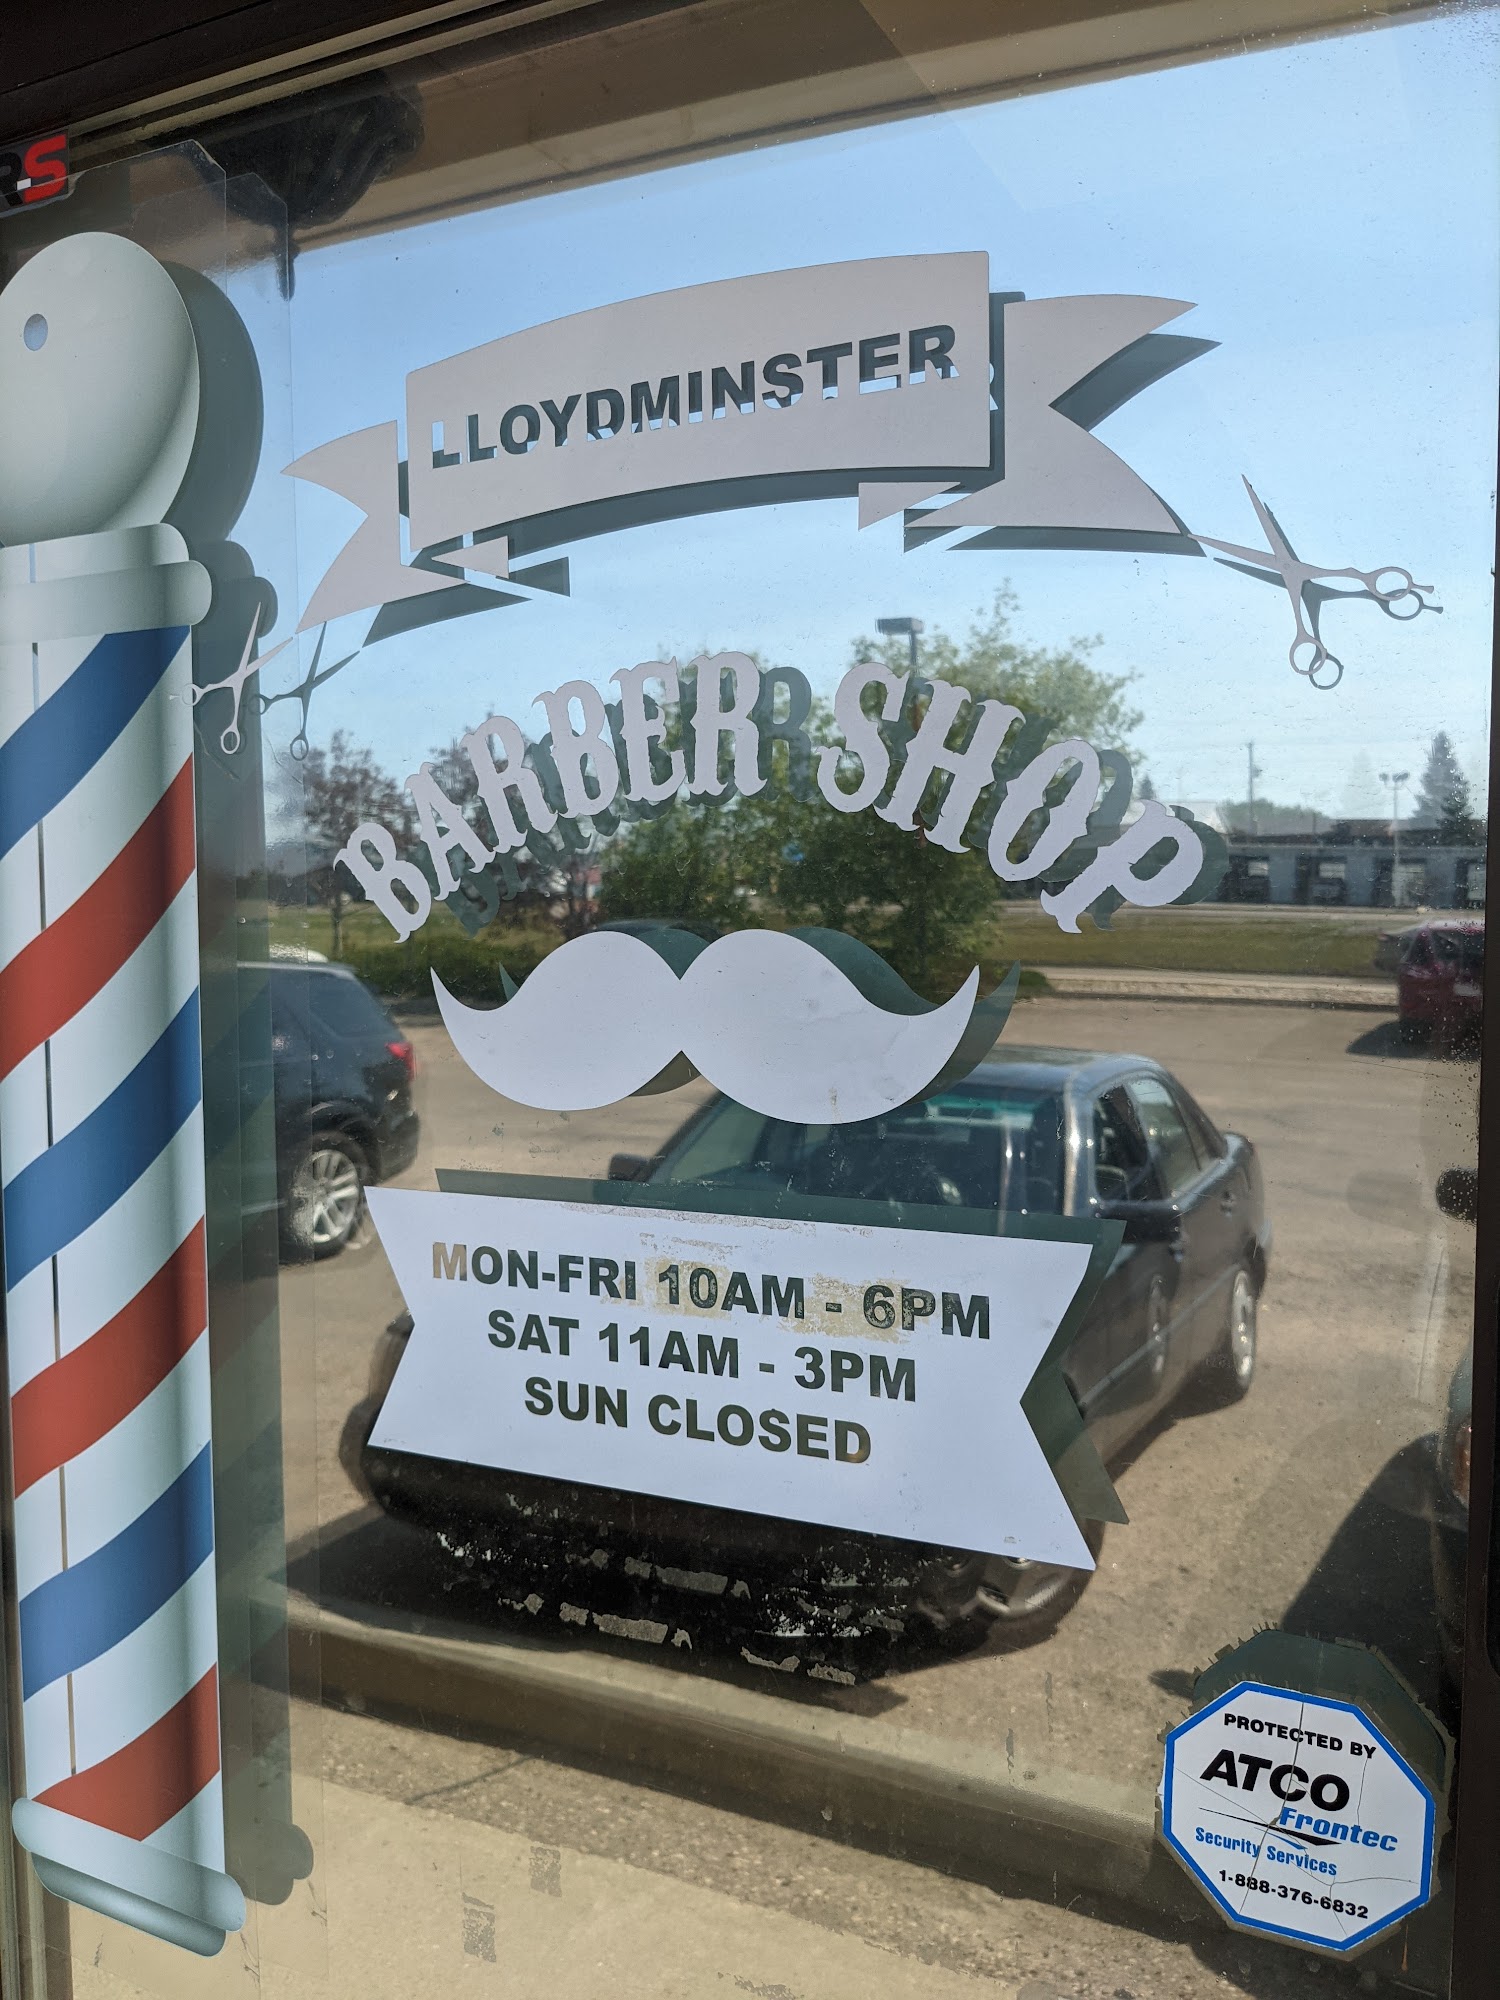 Lloydminster Barber Shop 3411 50 Ave, Lloydminster Saskatchewan S9V 0N9